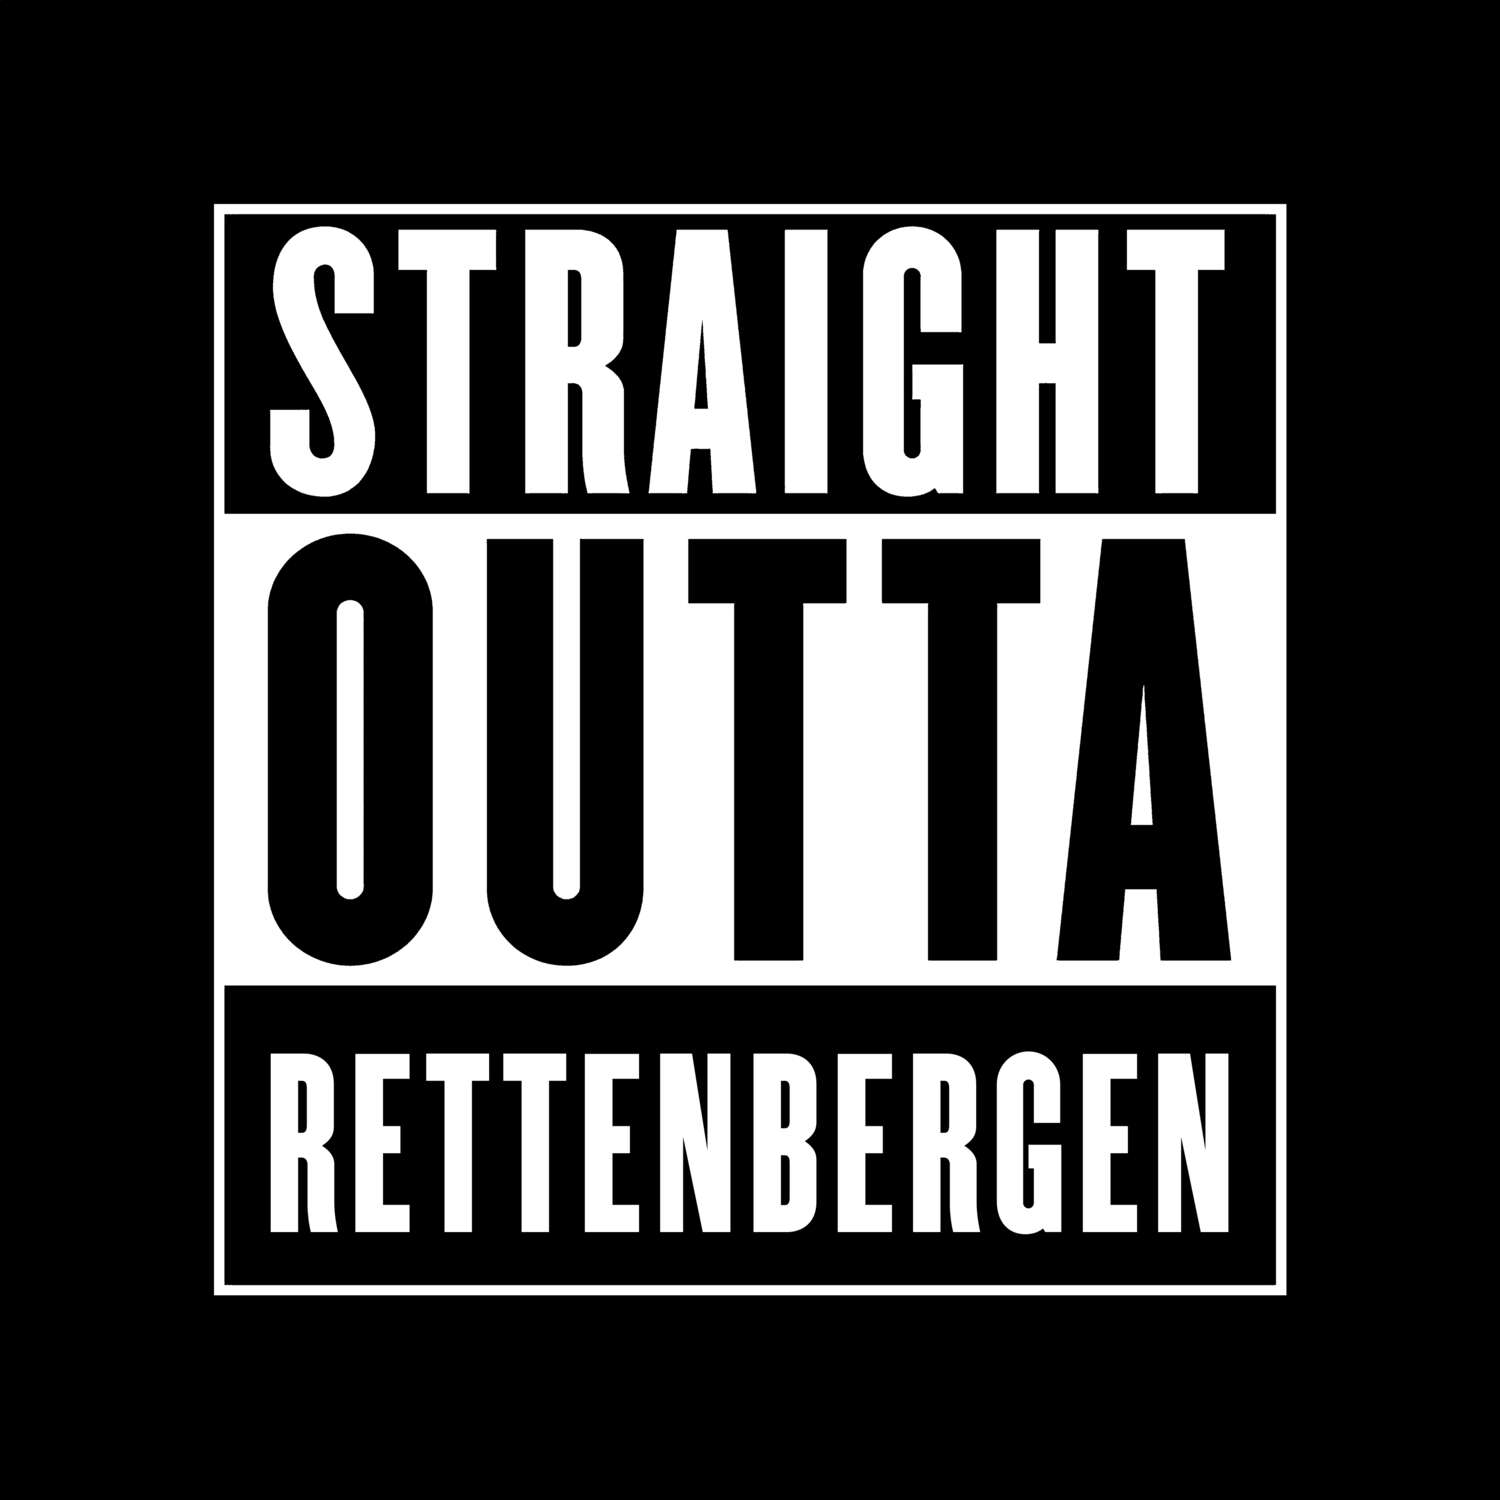 Rettenbergen T-Shirt »Straight Outta«